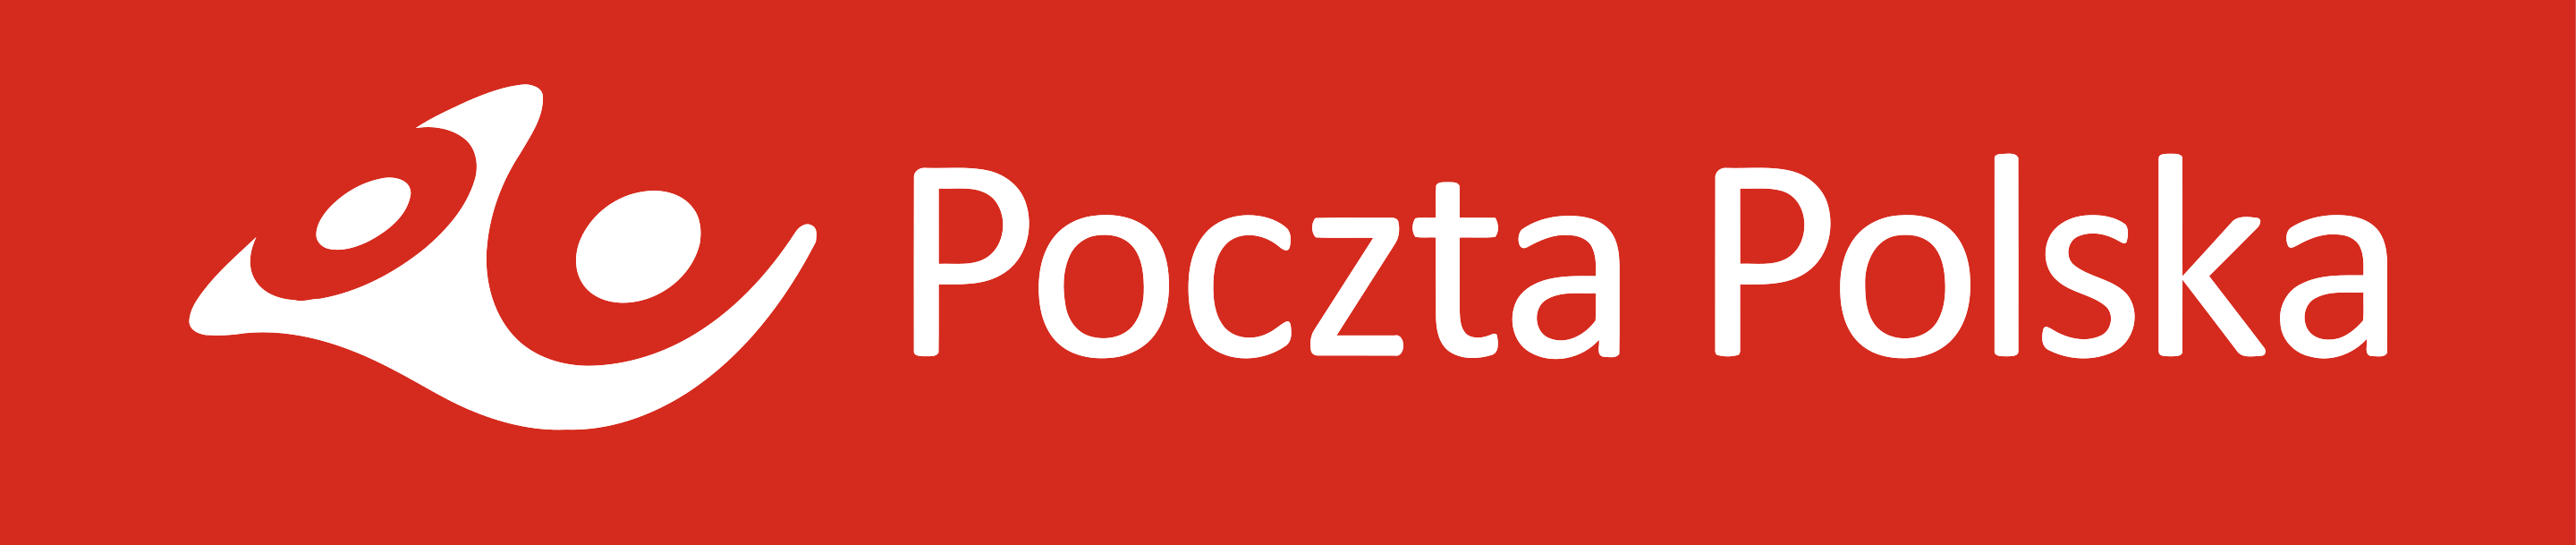 Poczta Polska - Почты Польши - Польская почта